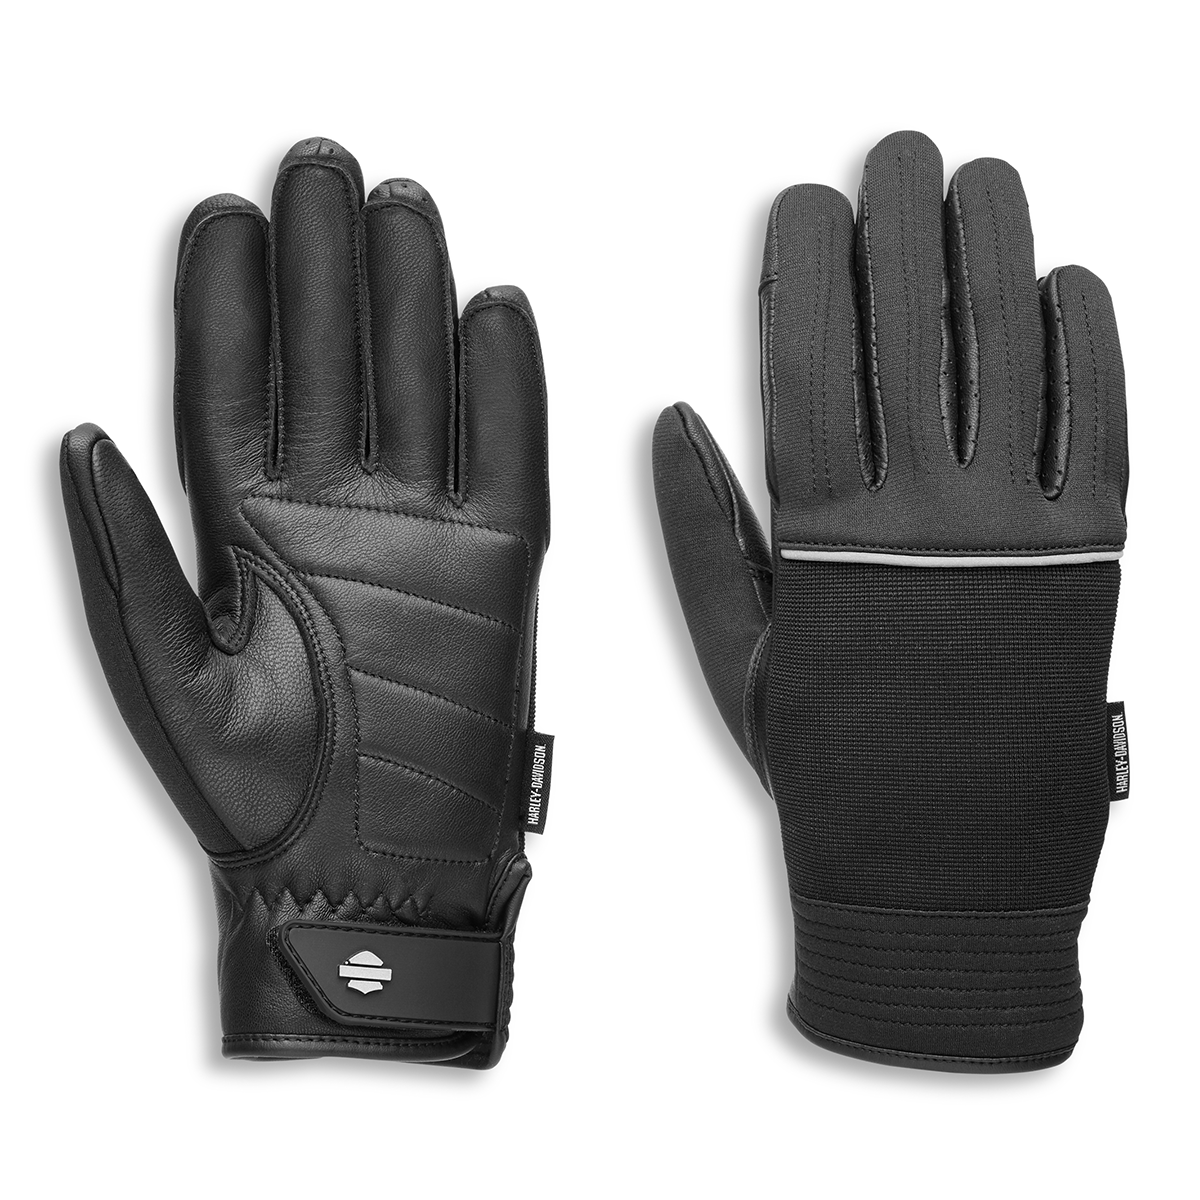 Harley-Davidson Brady Women's Full Finger Mixed Media Glove